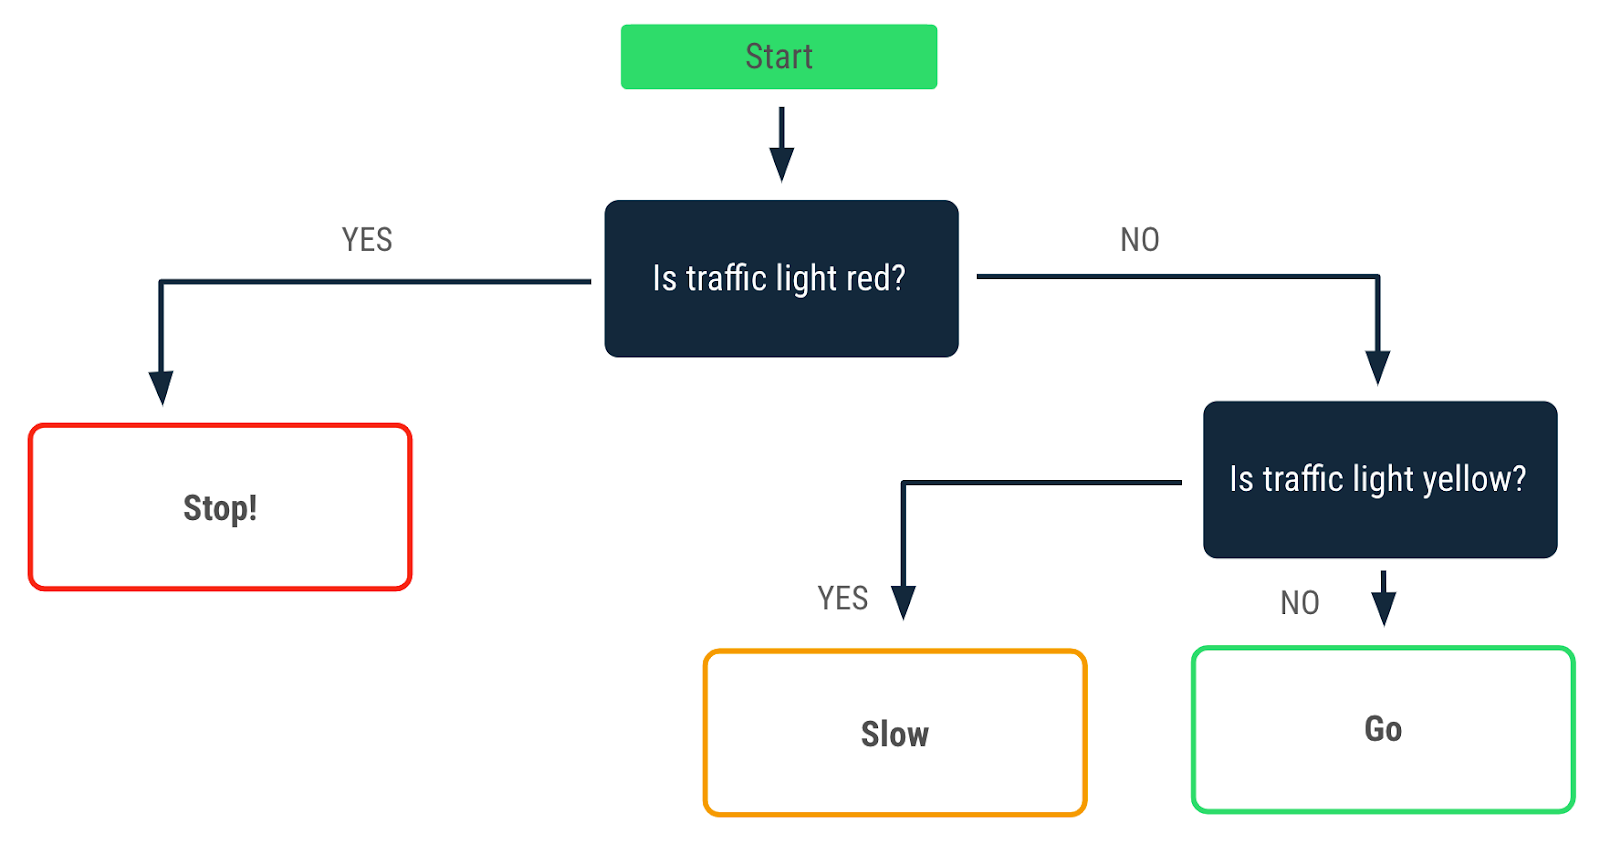 這張流程圖說明遇到紅燈時的決策模式。標有「是」的箭頭指向「停車！」訊息。標有「否」的箭頭指向另一個情況，說明遇到黃燈時的決策模式。從該決策點中，標有「是」的箭頭指向「慢行」訊息，標有「否」的箭頭則指向「行駛」訊息。